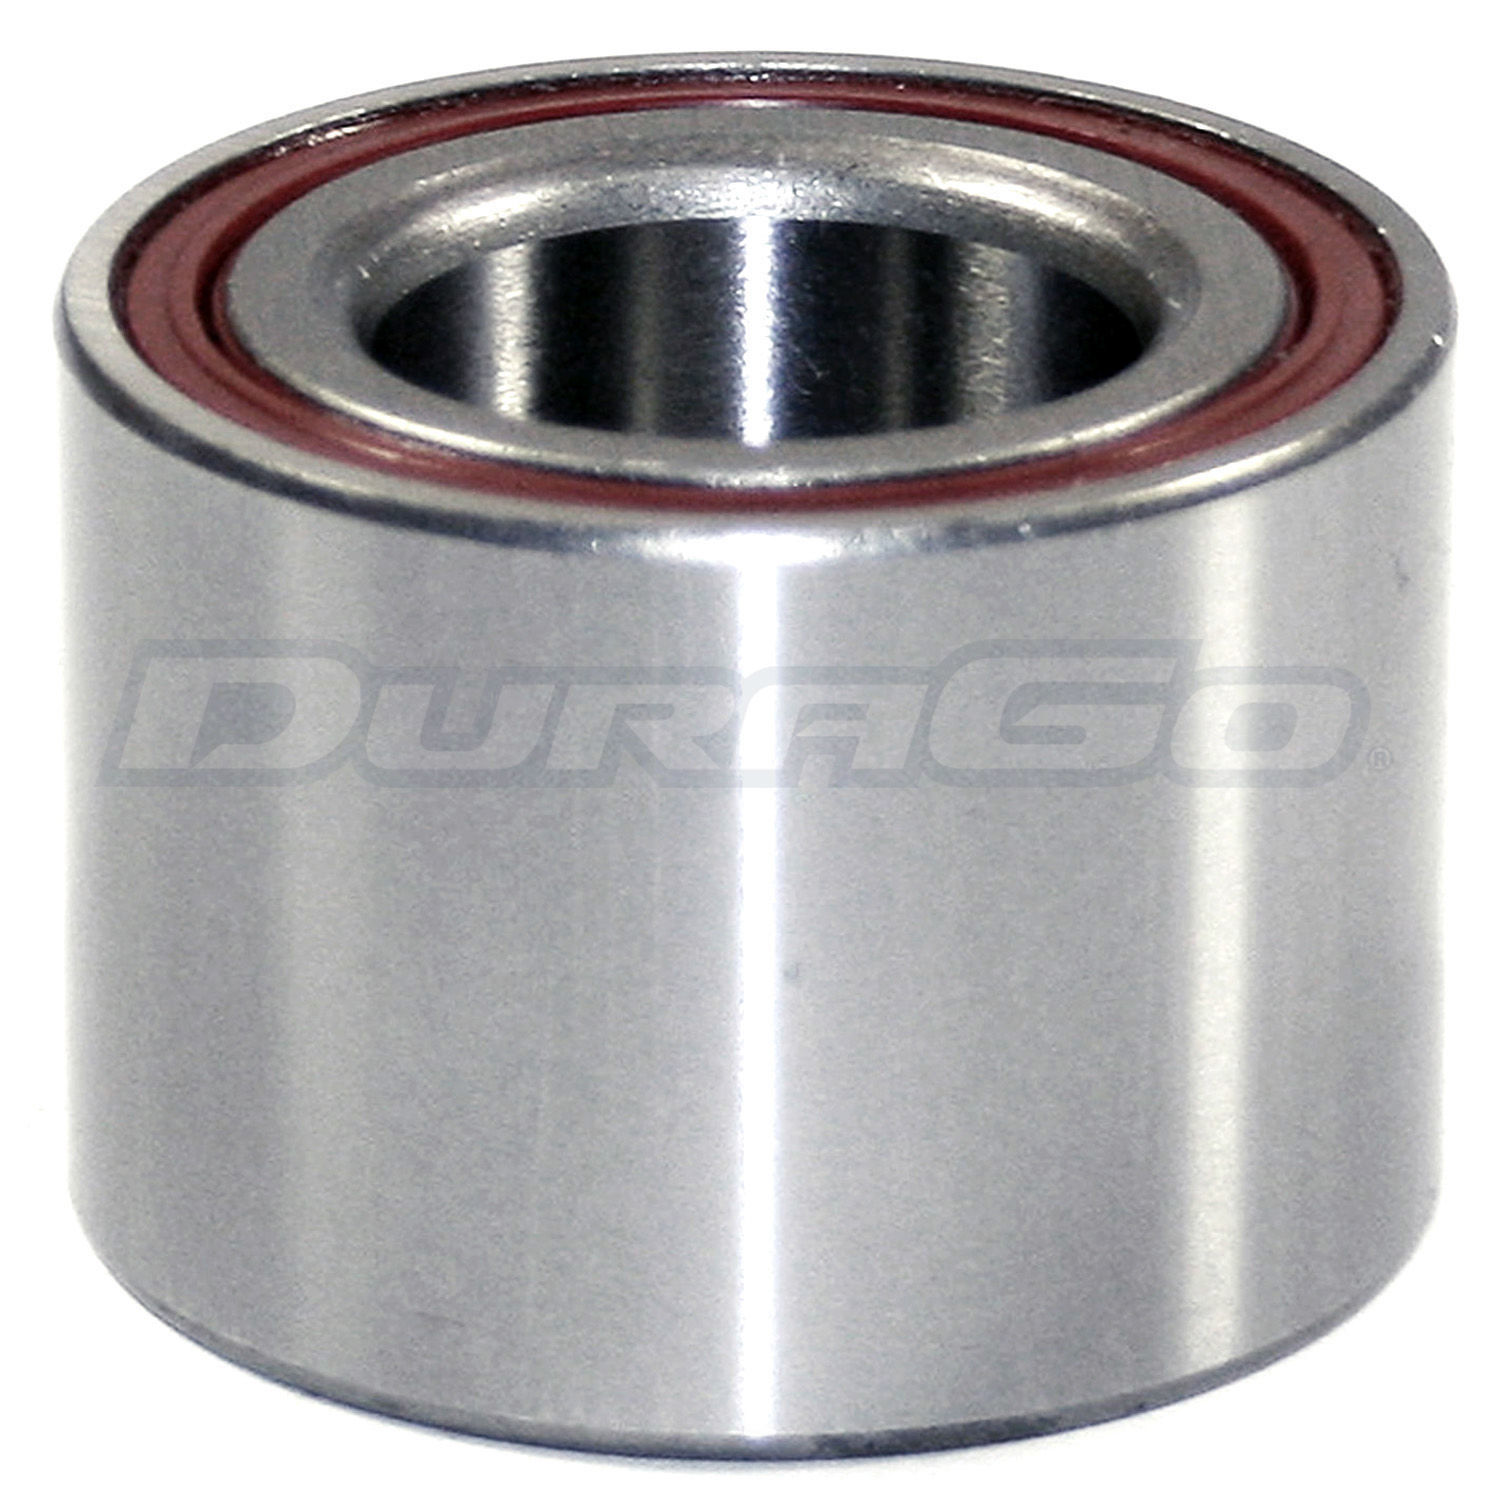 DURAGO - Wheel Bearing - D48 295-16007